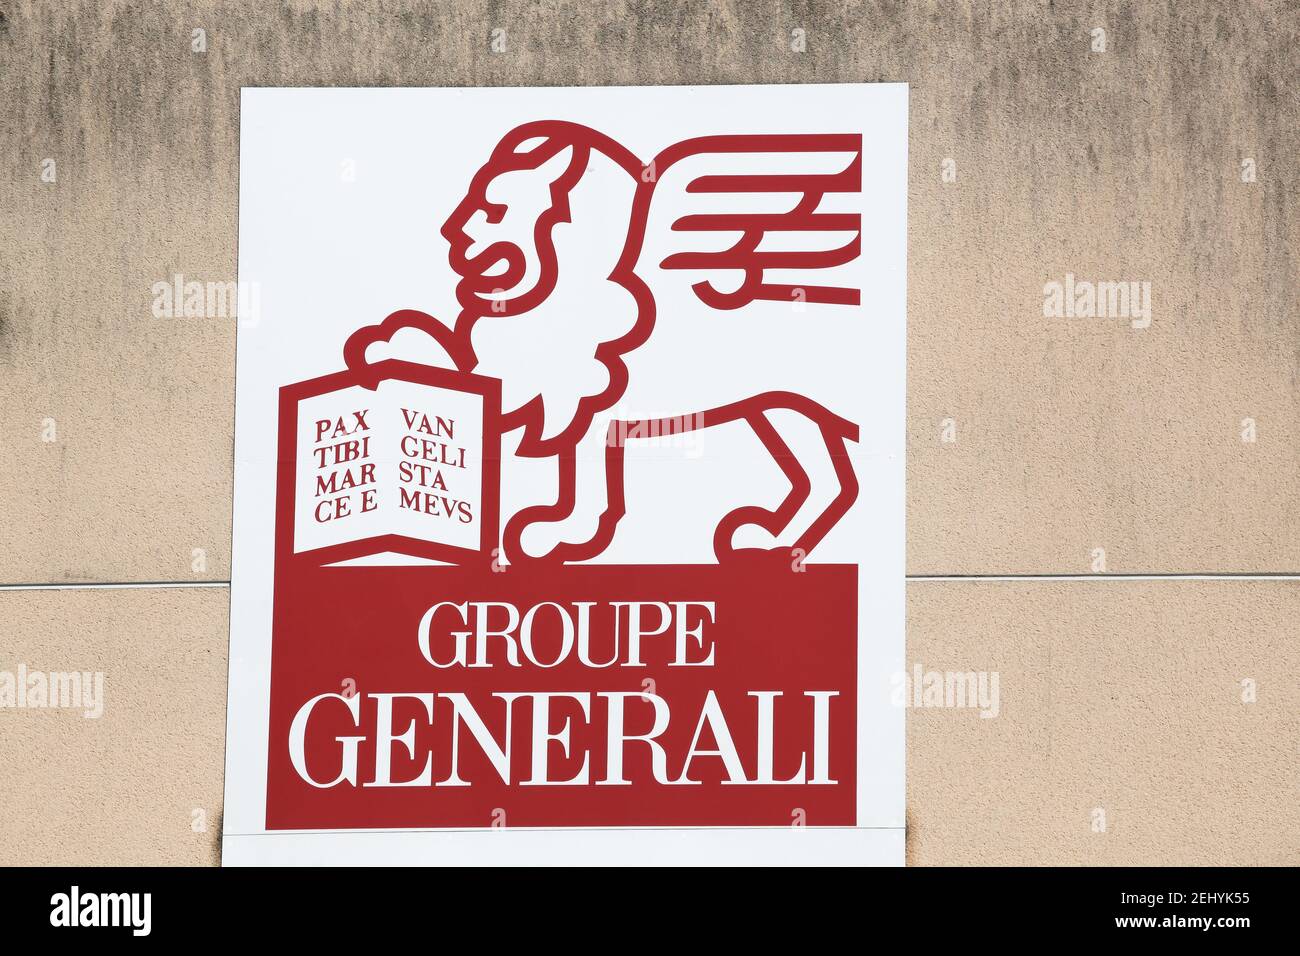 Macon, France - 5 juillet 2020 : logo Generali sur un mur. Generali est la plus grande compagnie d'assurance en Italie et la troisième au monde Banque D'Images